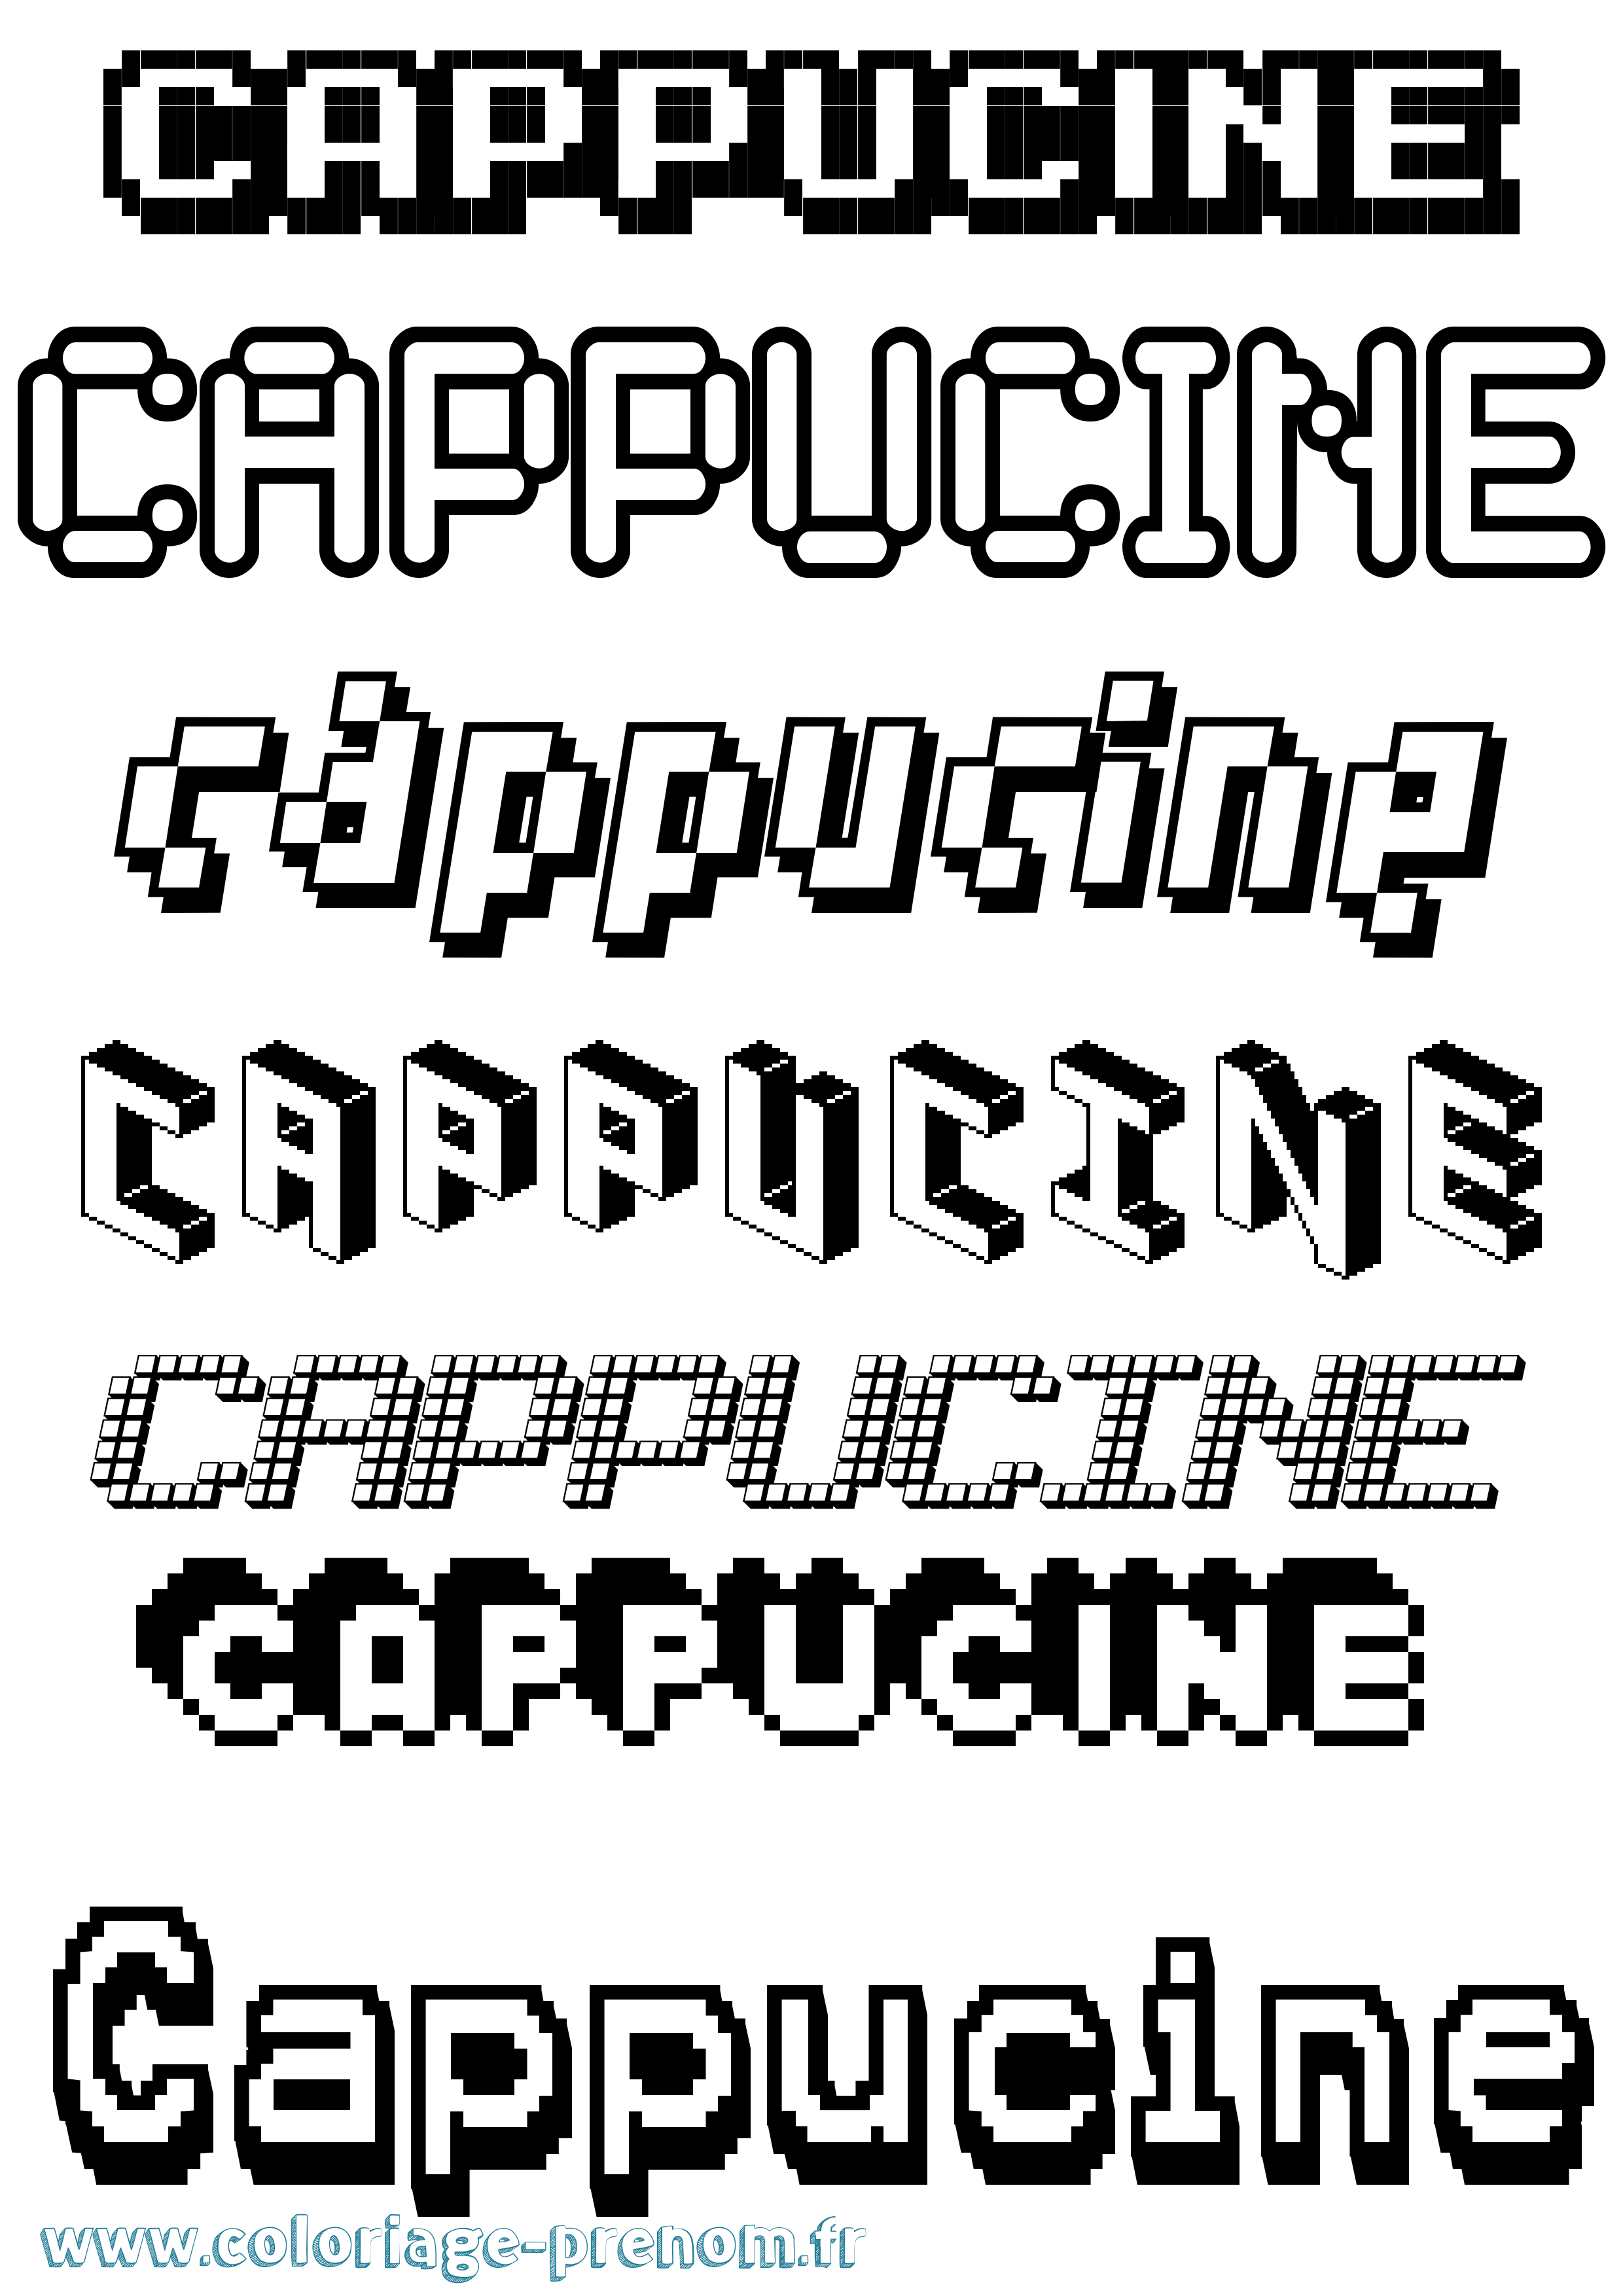 Coloriage prénom Cappucine Pixel